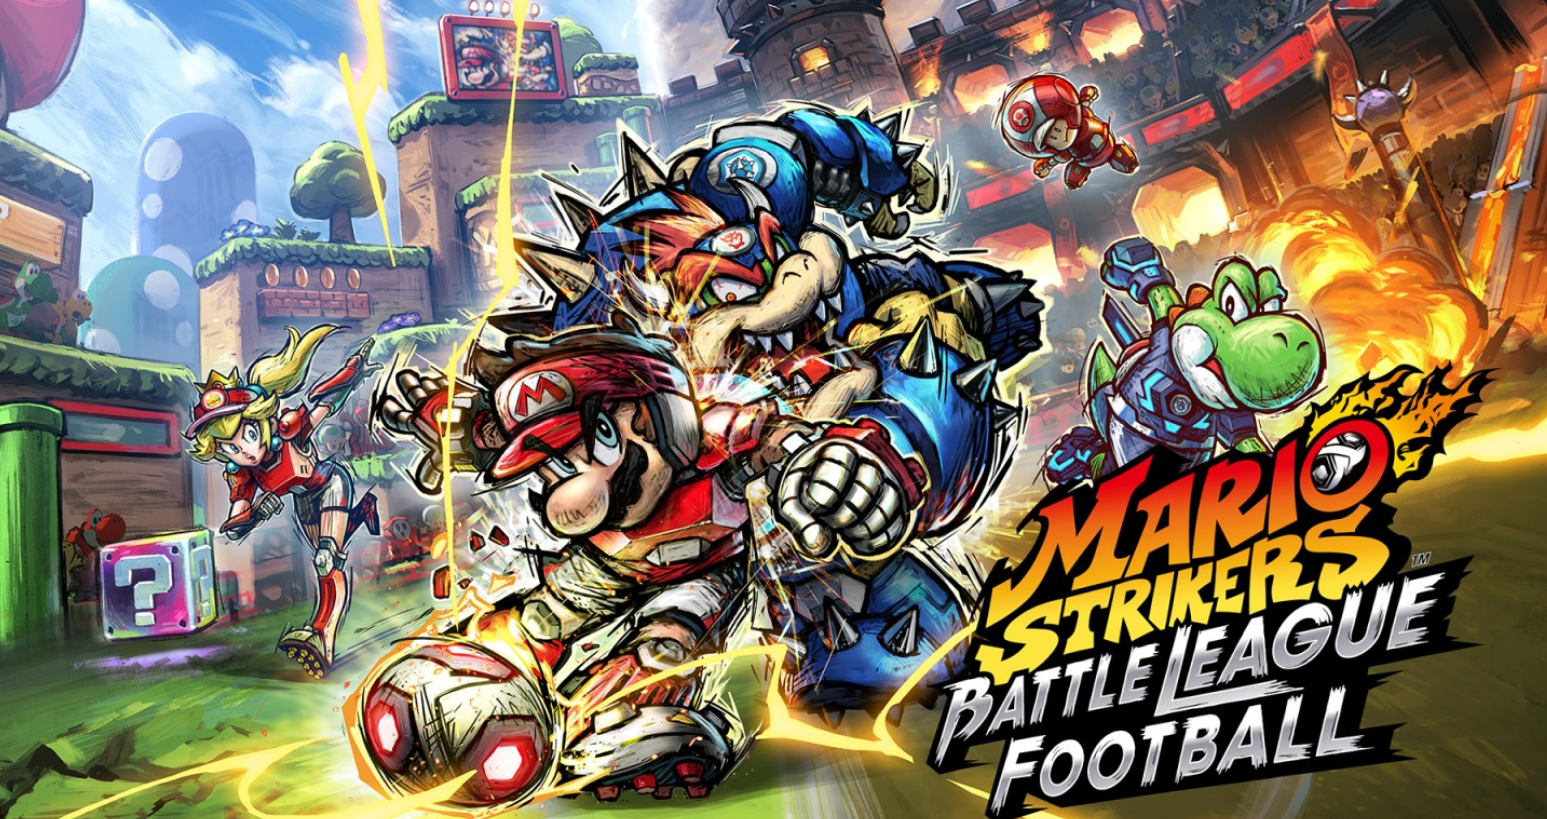 Immagine di Mario Strikers Battle League Football e Nintendo dominano la classifica di vendite italiana